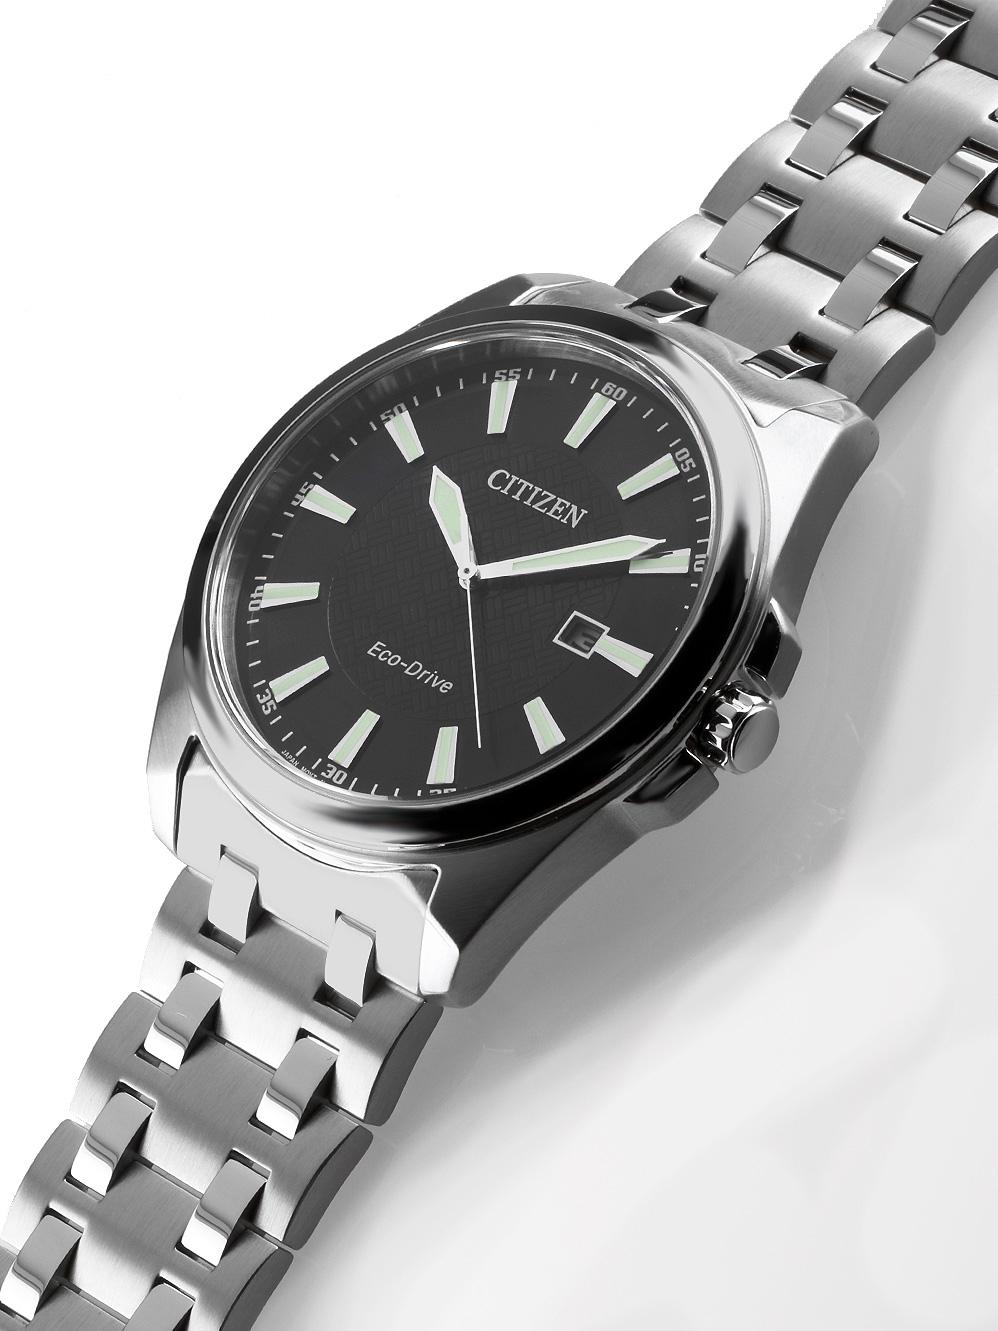 Eco наручные в | — BM7108-81E TEMPUS купить часы Оригинал Citizen Drive